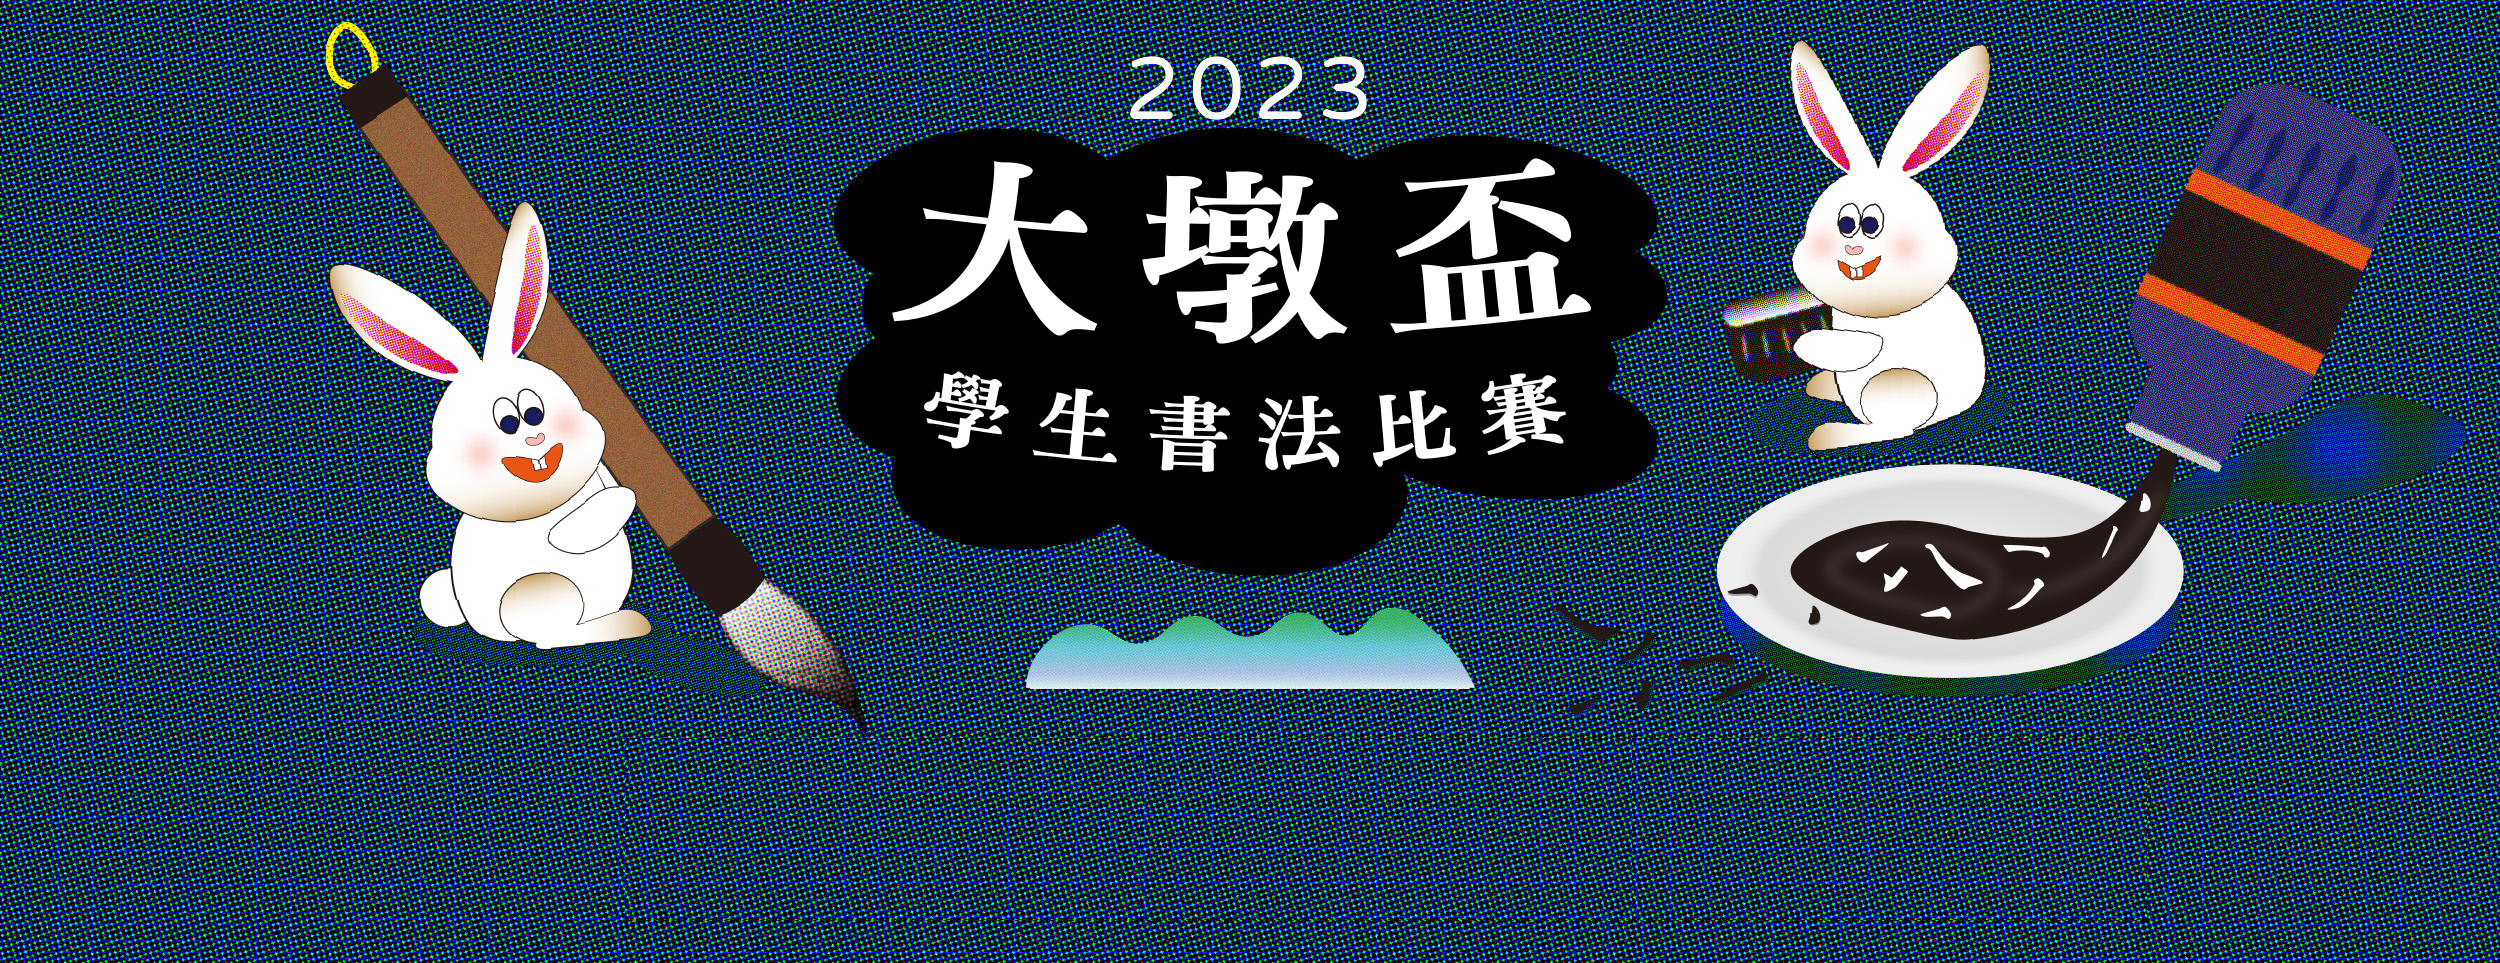 2023大墩盃學生書法比賽─獲獎名單公告 的推廣活動宣傳圖片